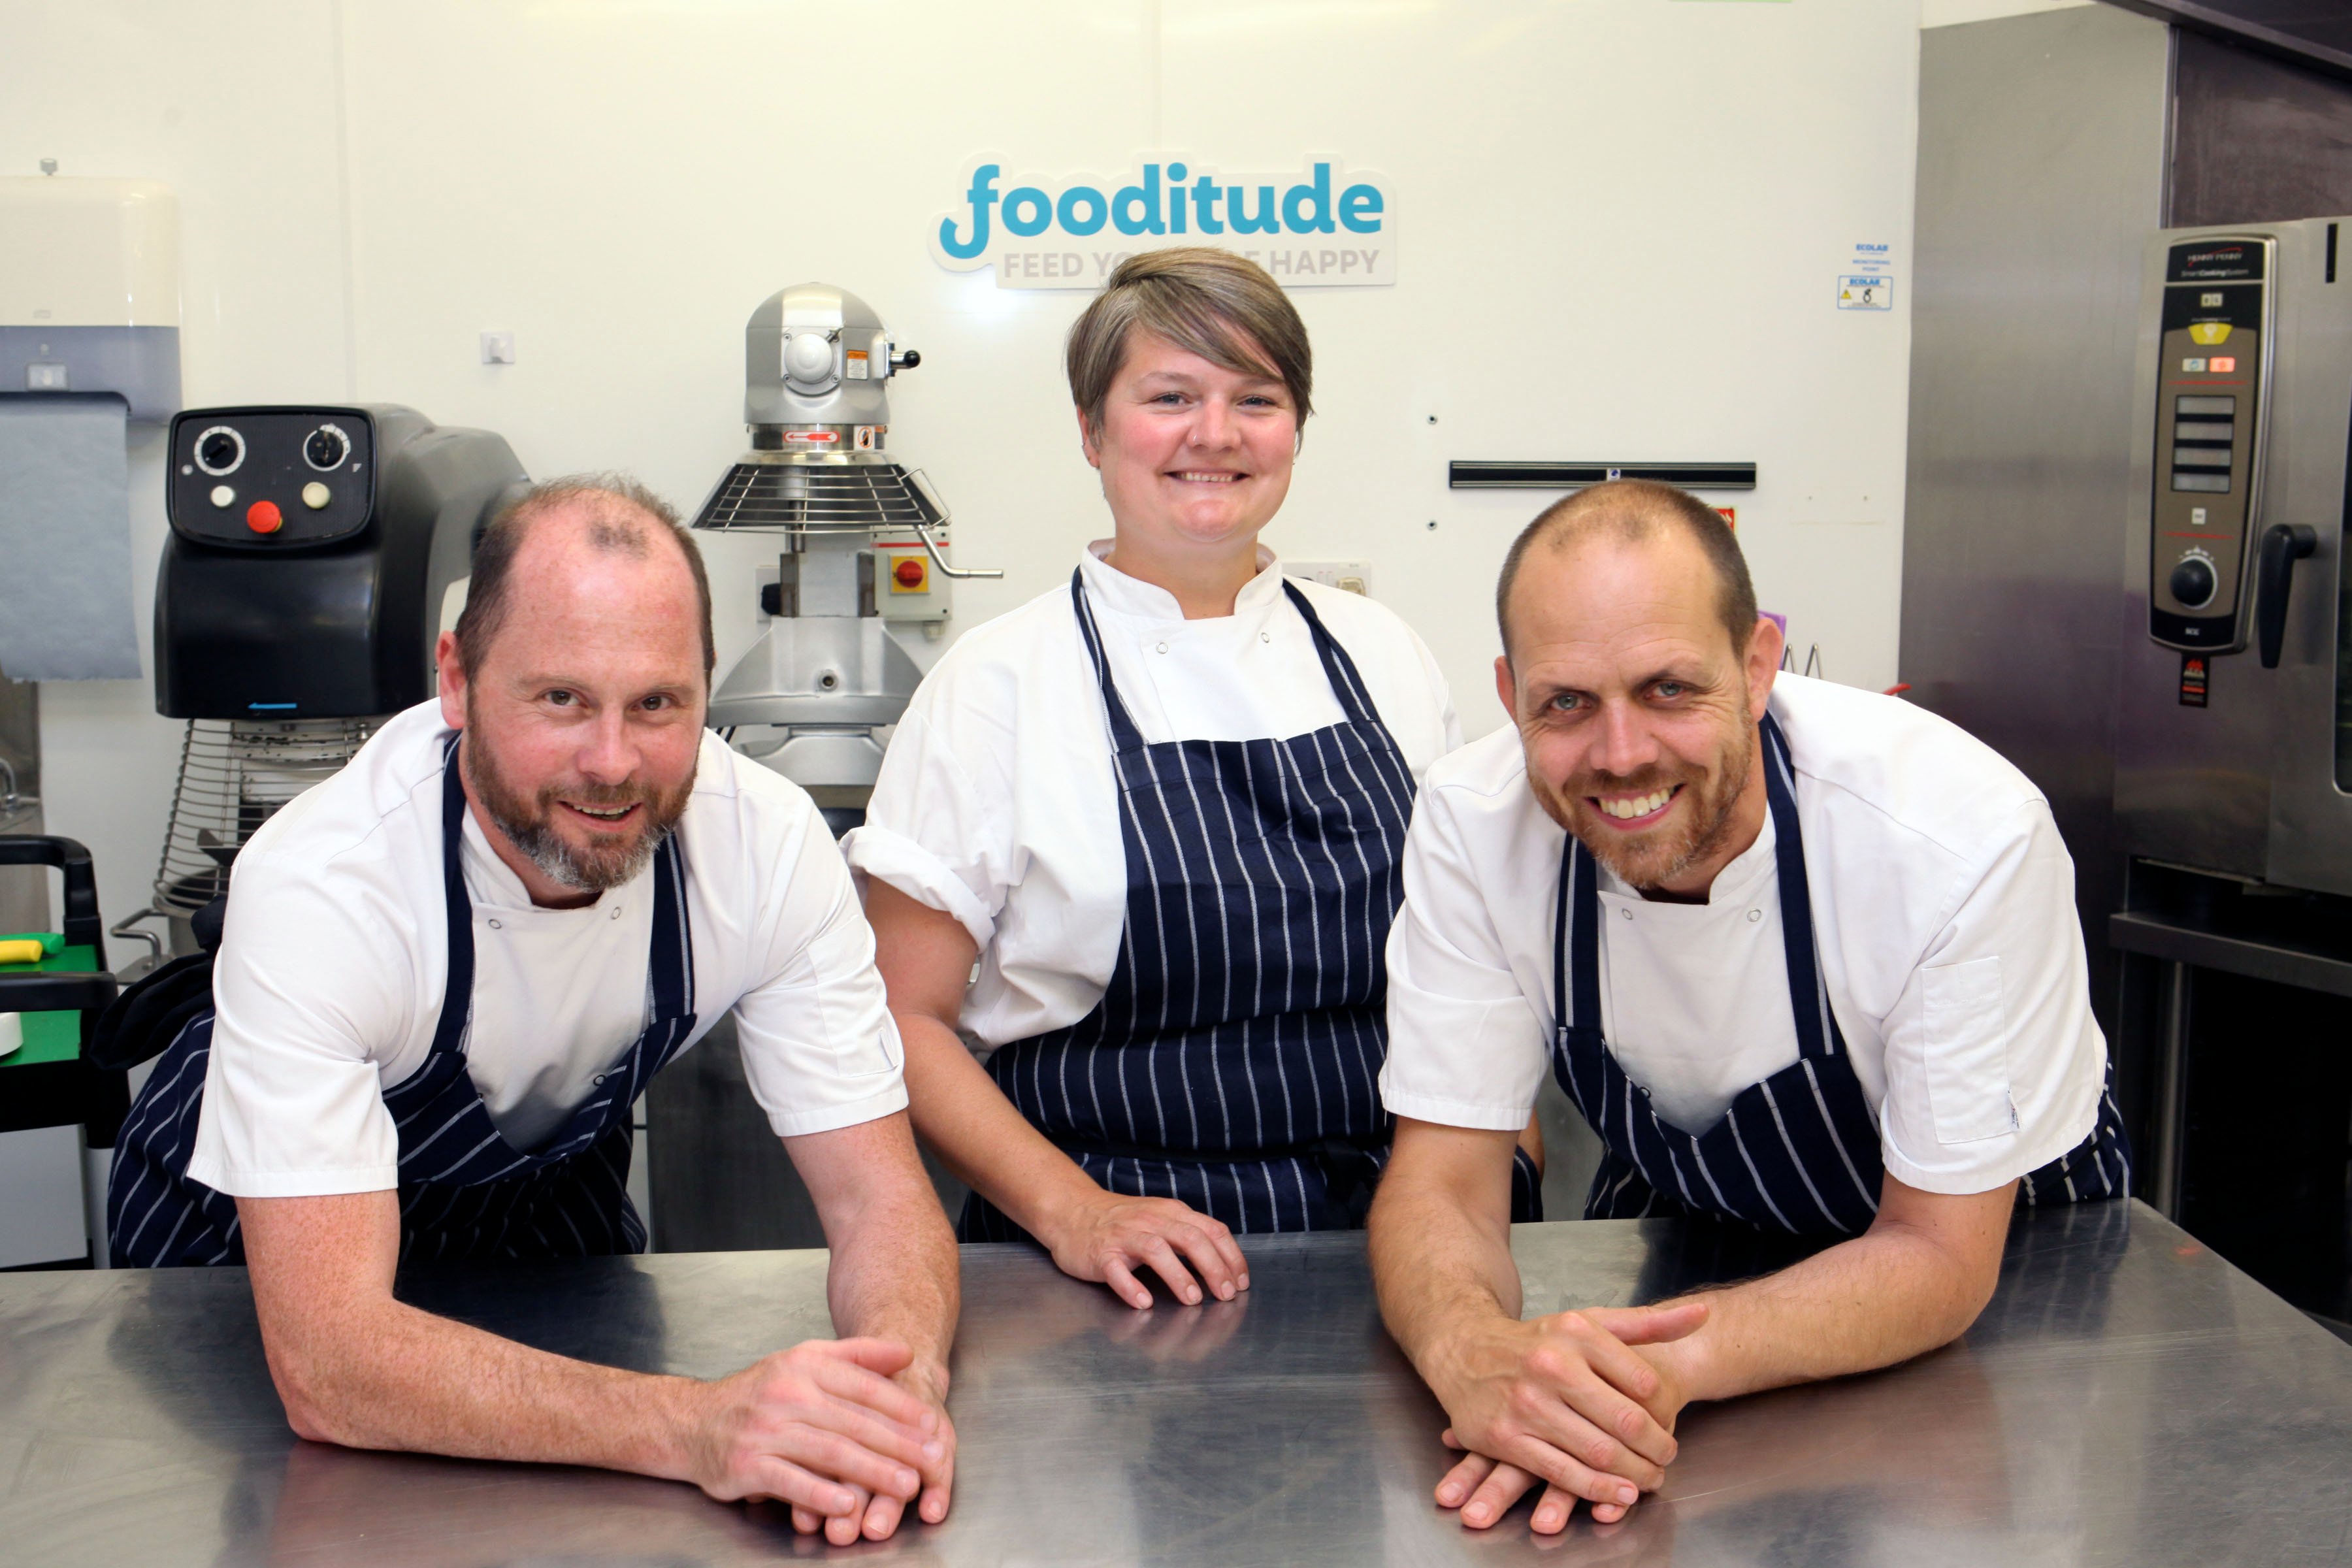 IWD Profile: Chef Susi brings foodie joy to people at work